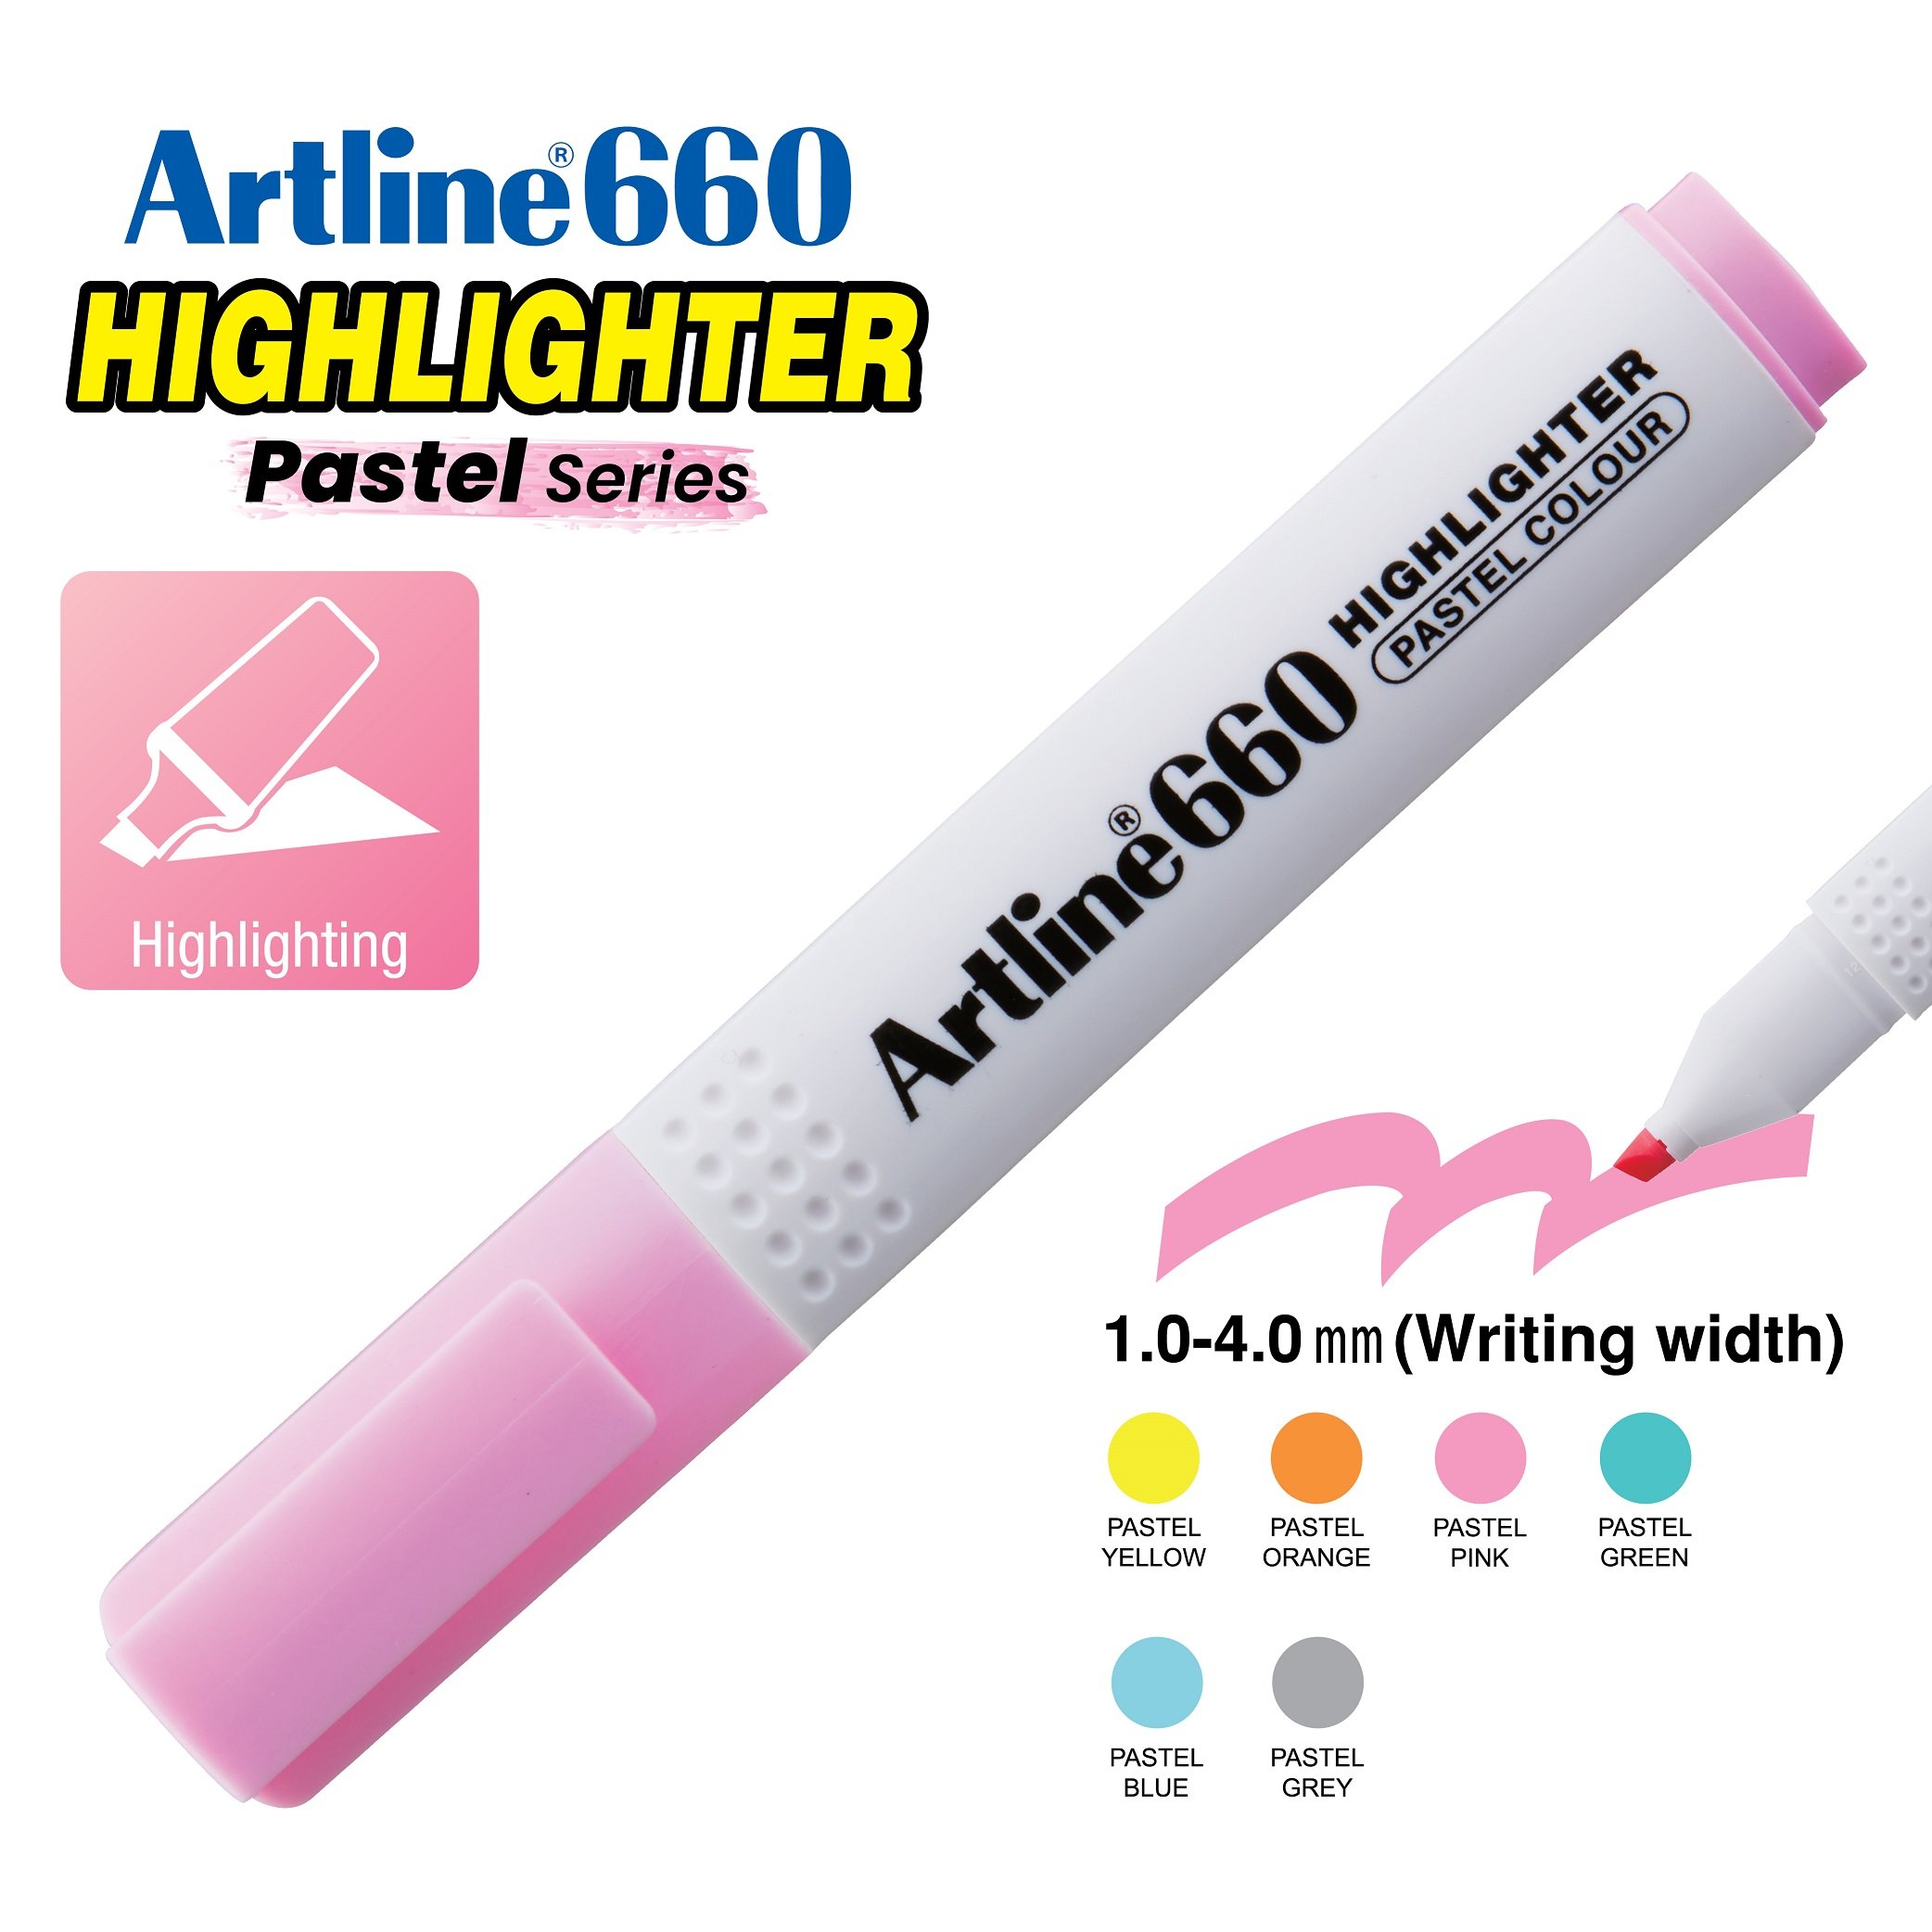 Artline Highlighter Phosphoric Bastel Model 660 Set of 6 Color 